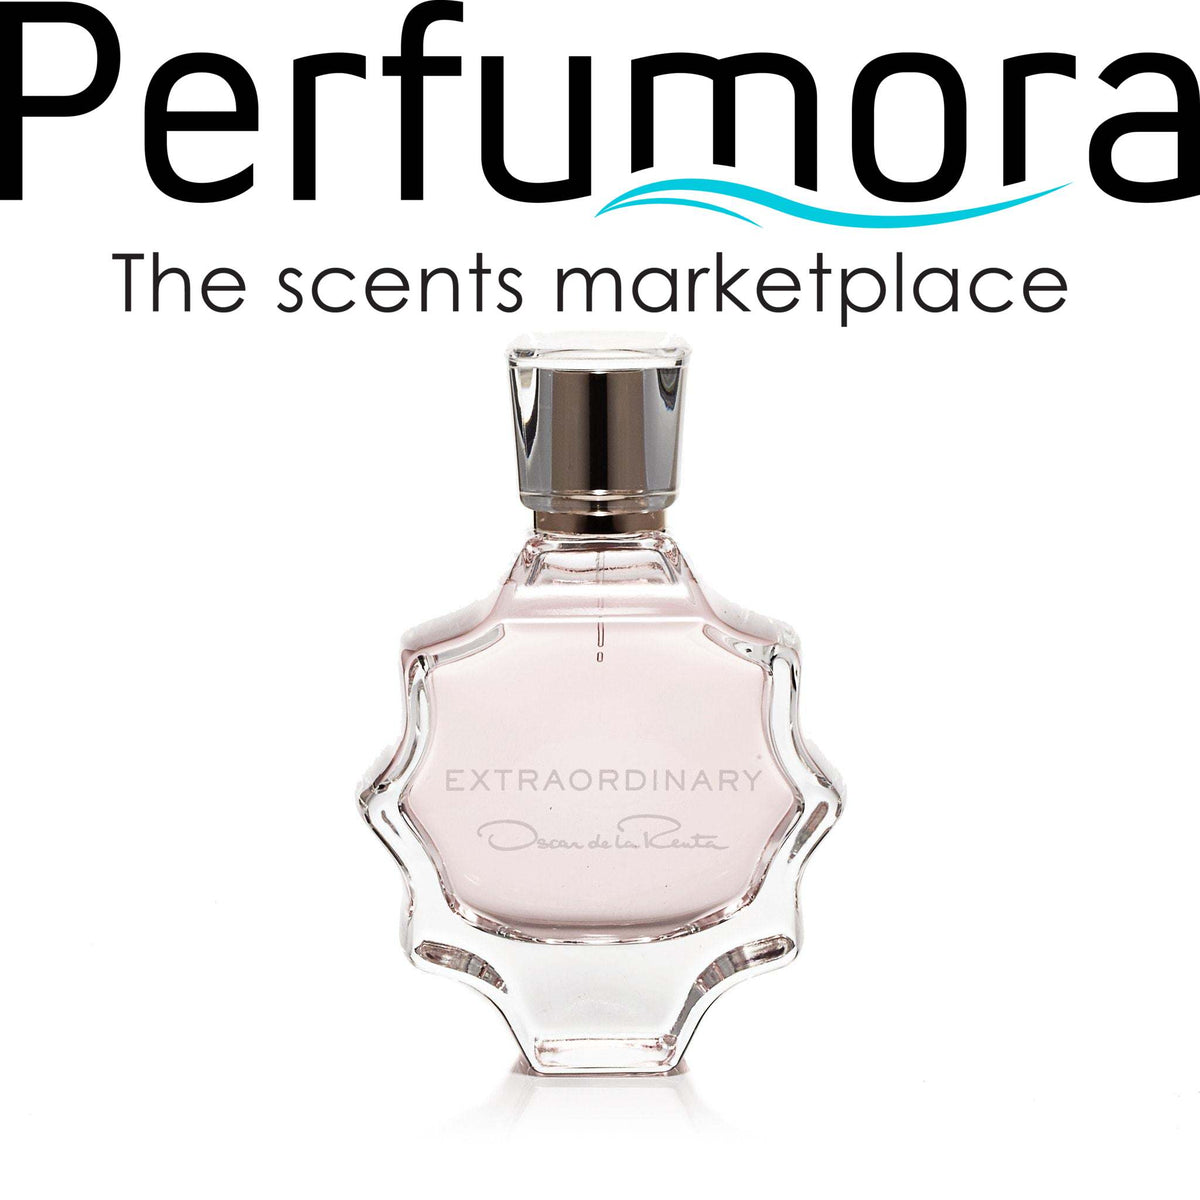 Extraordinary Eau de Parfum for Women by Oscar De La Renta 3.0 oz.